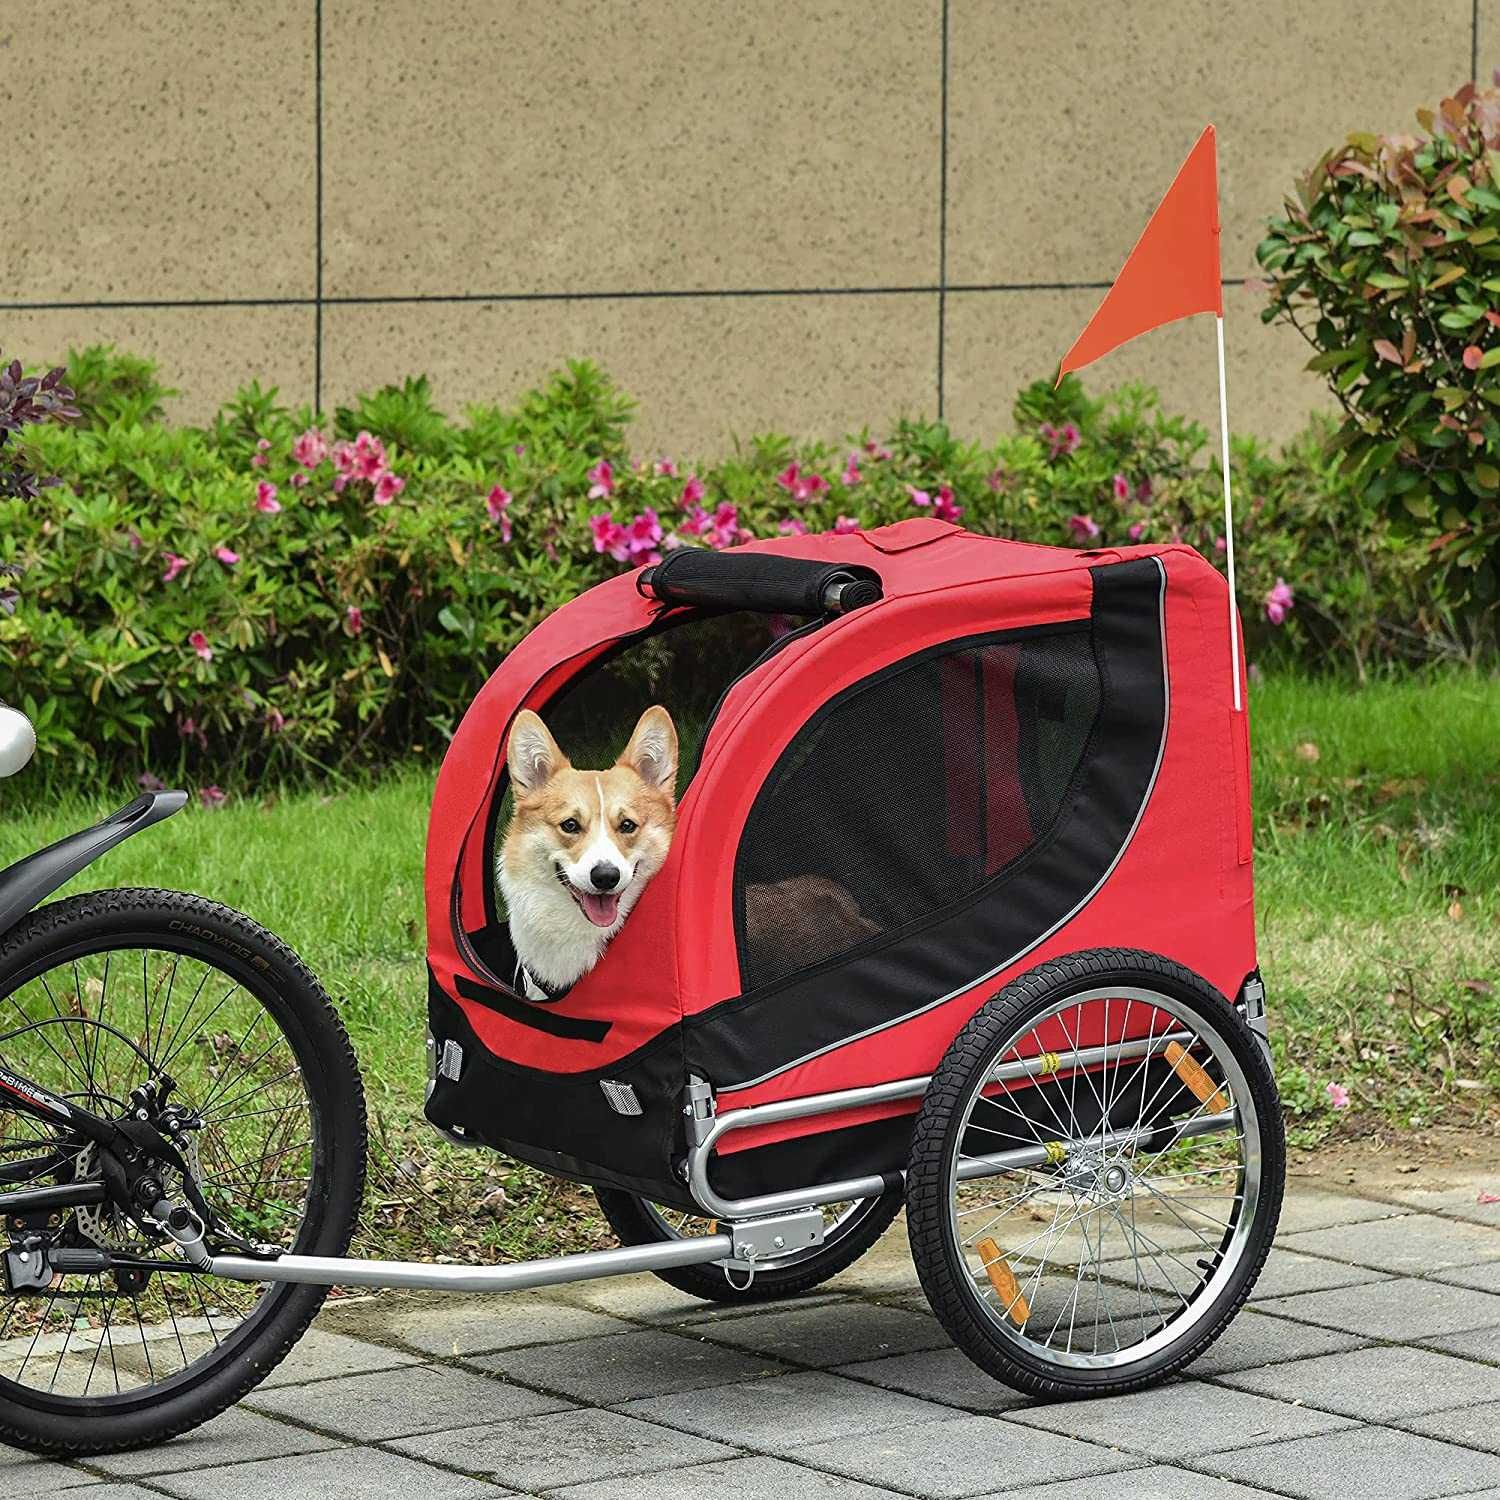 Reboque bicicleta para cães e animais de estimação,130 x 73 x 90 cm